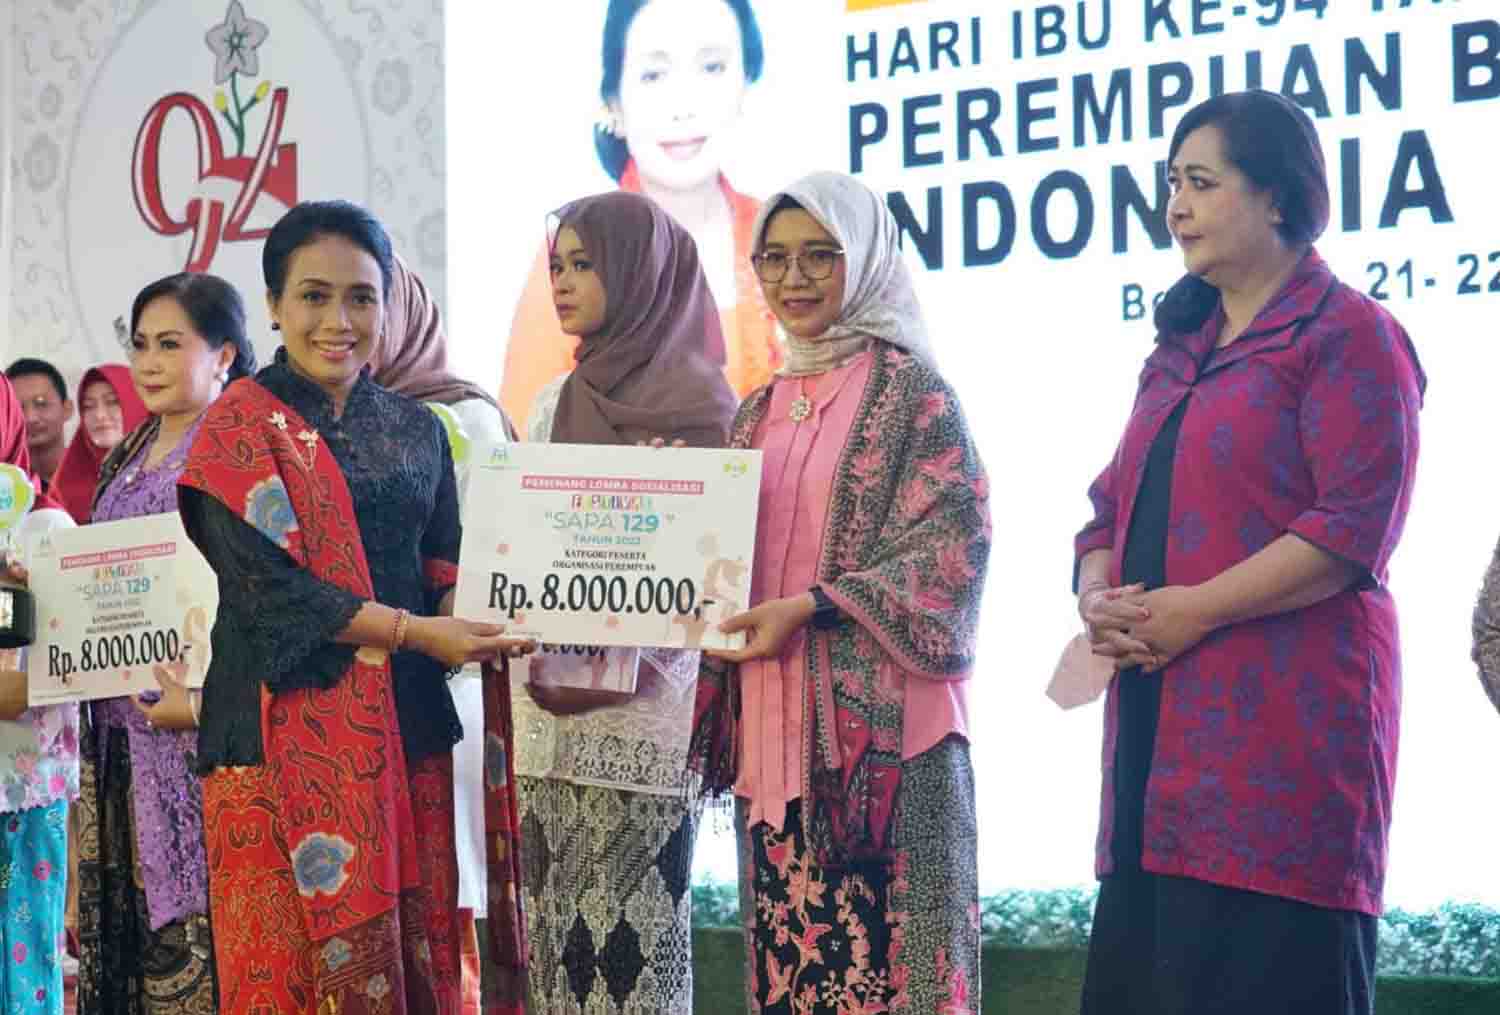 Menteri PPPA Pimpin Upacara Hari Ibu Nasional ke-94 di Bengkulu